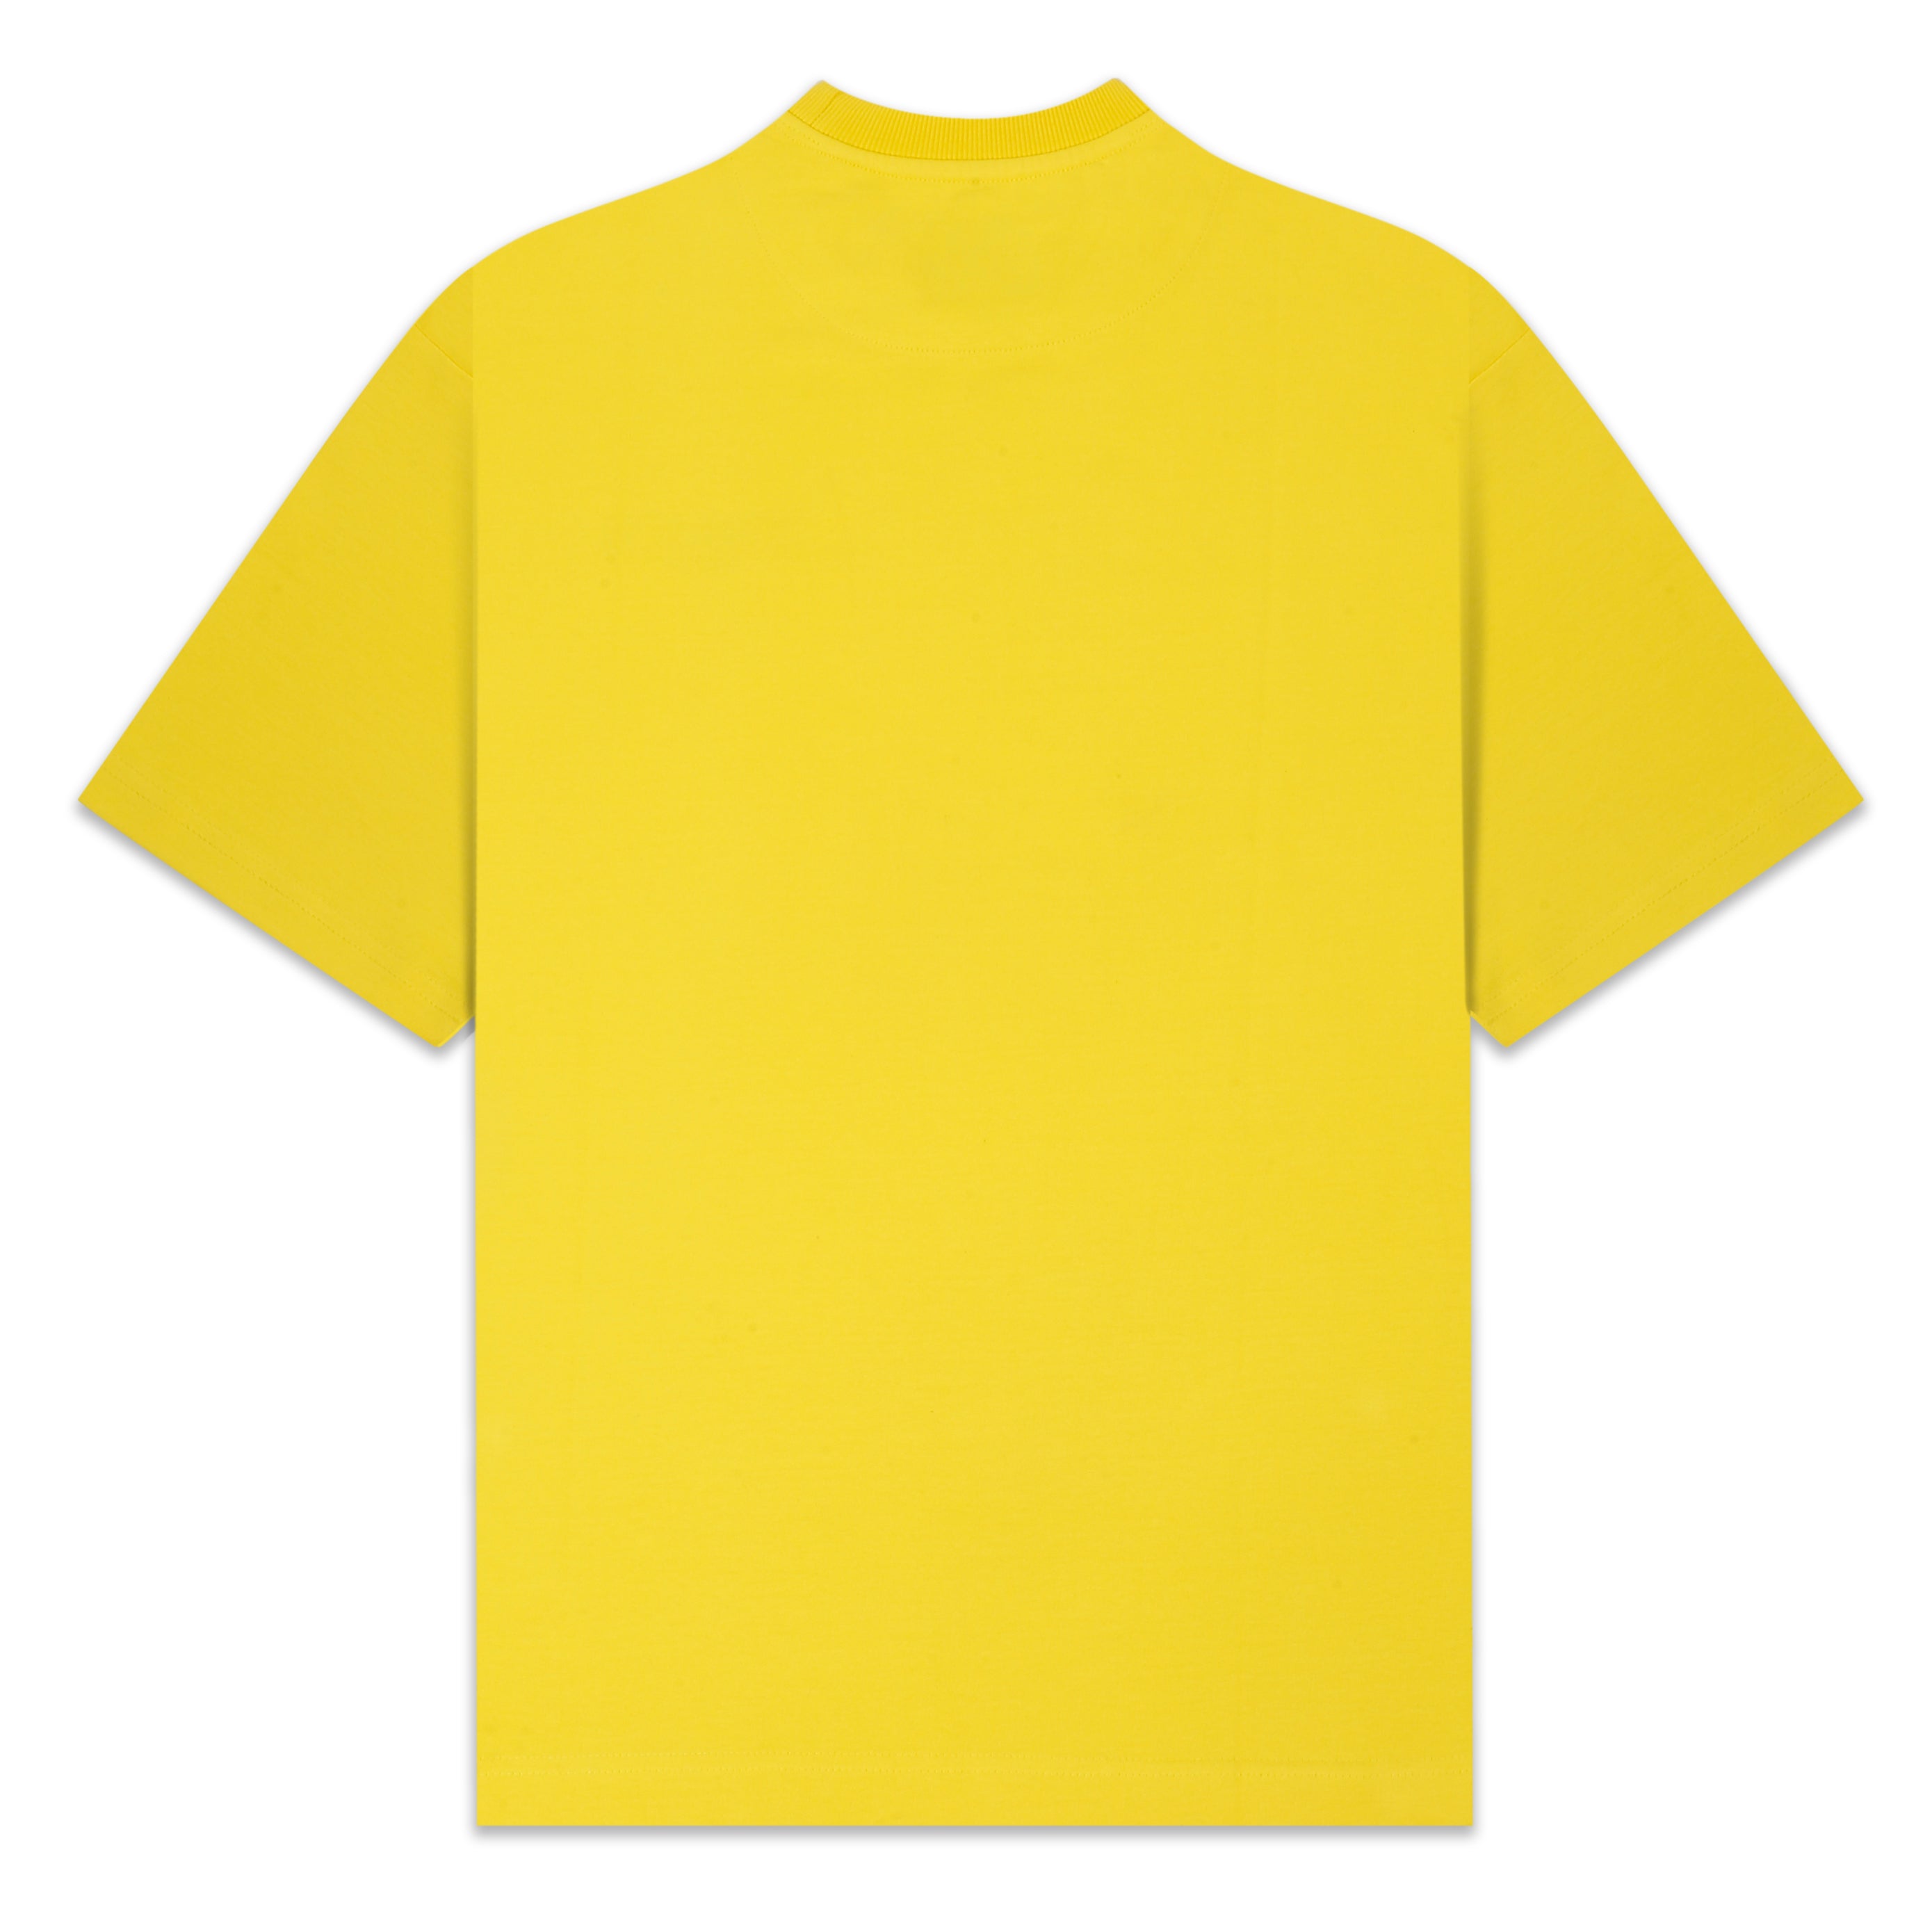 oversized blank yellow